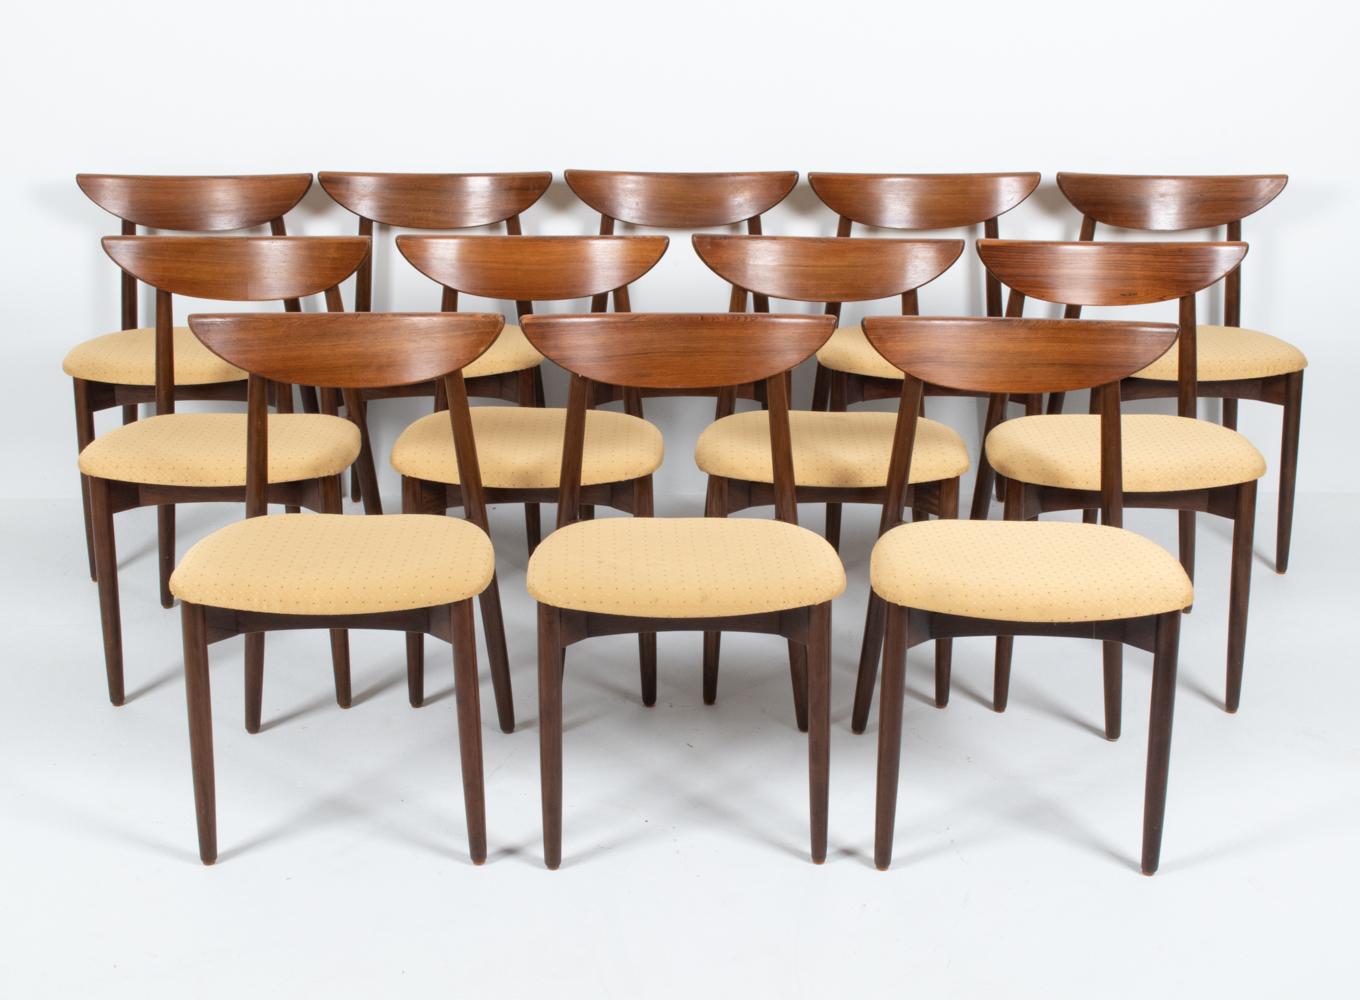 Beeindrucken Sie Ihre Gäste mit diesem fabelhaften Set aus zwölf seltenen Esszimmerstühlen, entworfen vom renommierten dänischen Designer Harry Ostergaard. Diese Esszimmerstühle des Modells 58 sind am ehesten an ihren ikonischen, skulpturalen